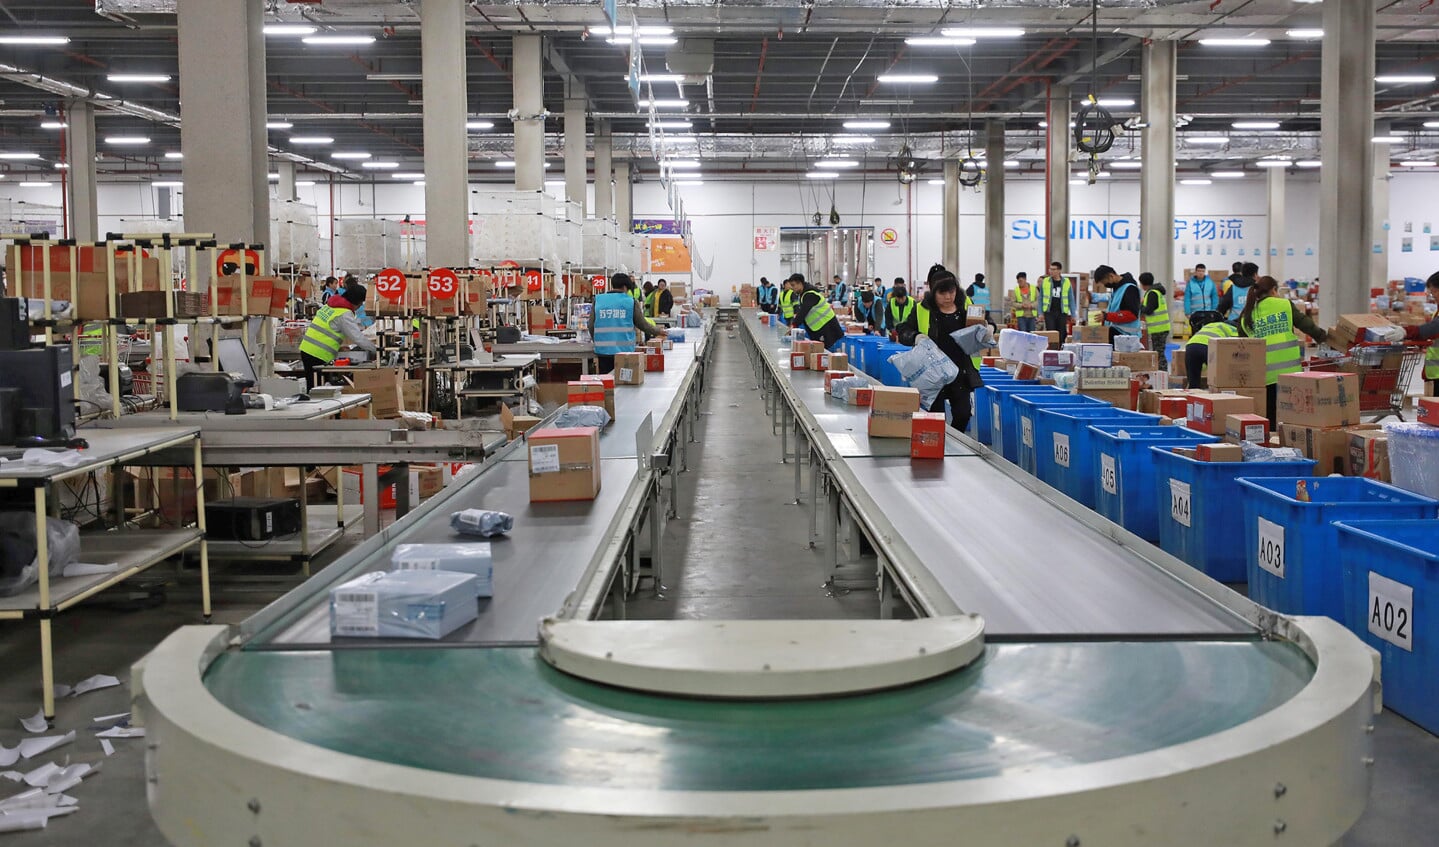 Het online winkelen en de zucht van consumenten om zo goedkoop mogelijk aan spullen te komen, daar kan een fabrikant in de eurozone bijna niet tegenop. Op de foto een distributiecentrum in China.